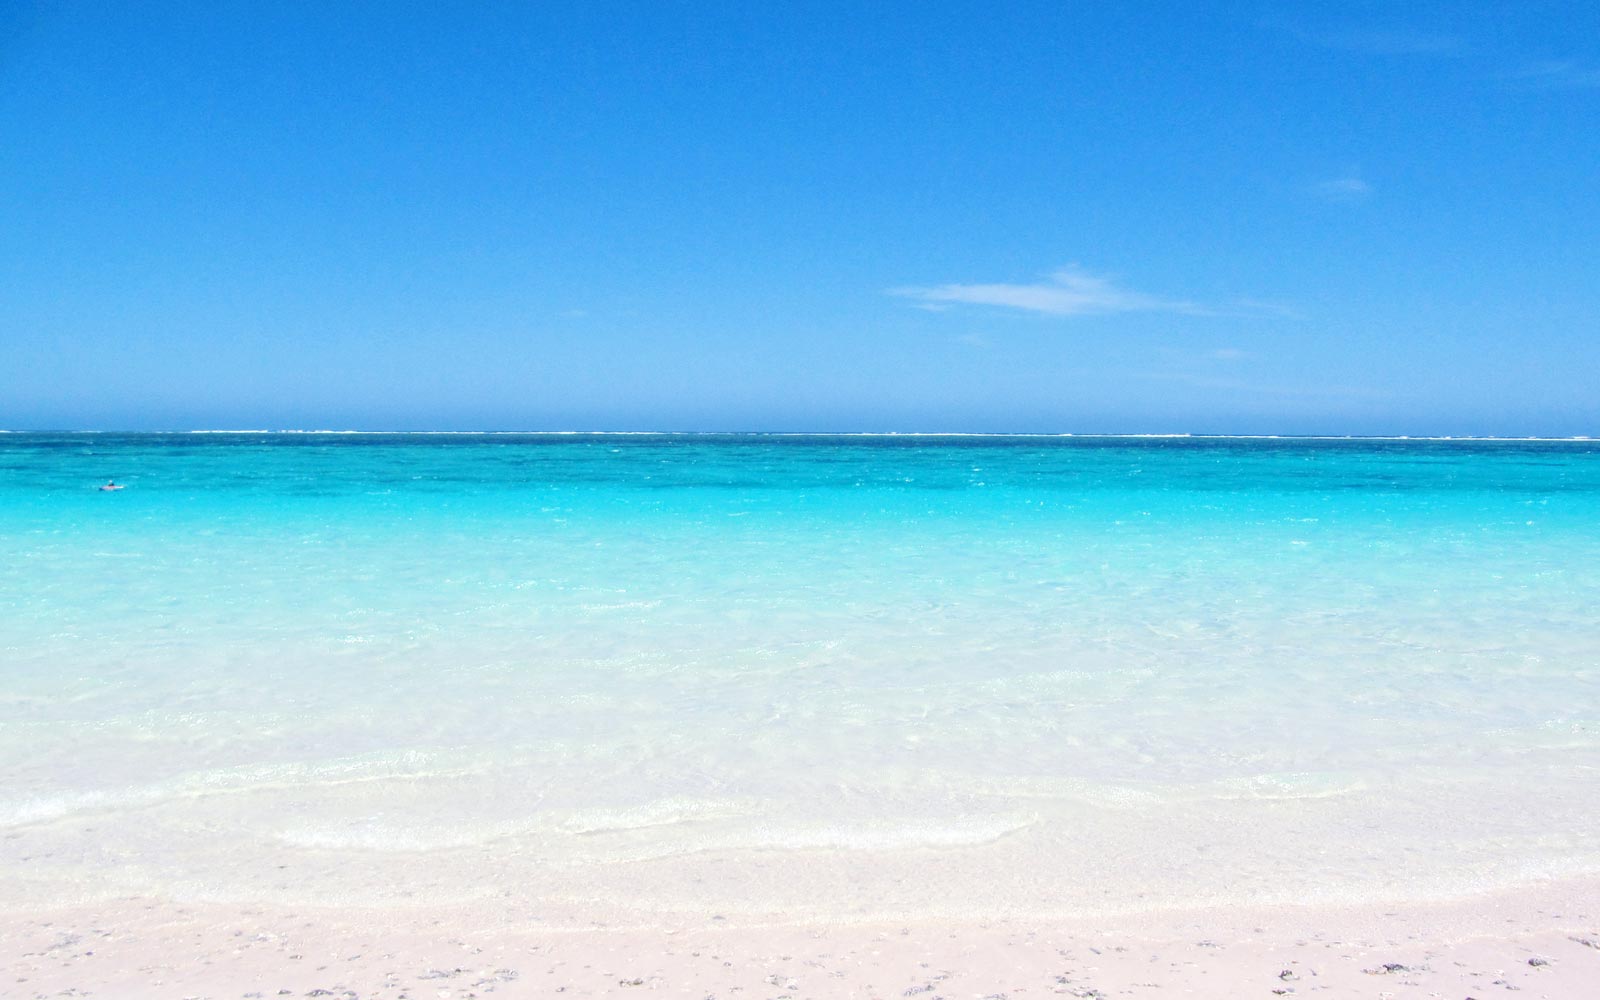 Mauritius Beach / Western Australia / Australia // World Beach Guide